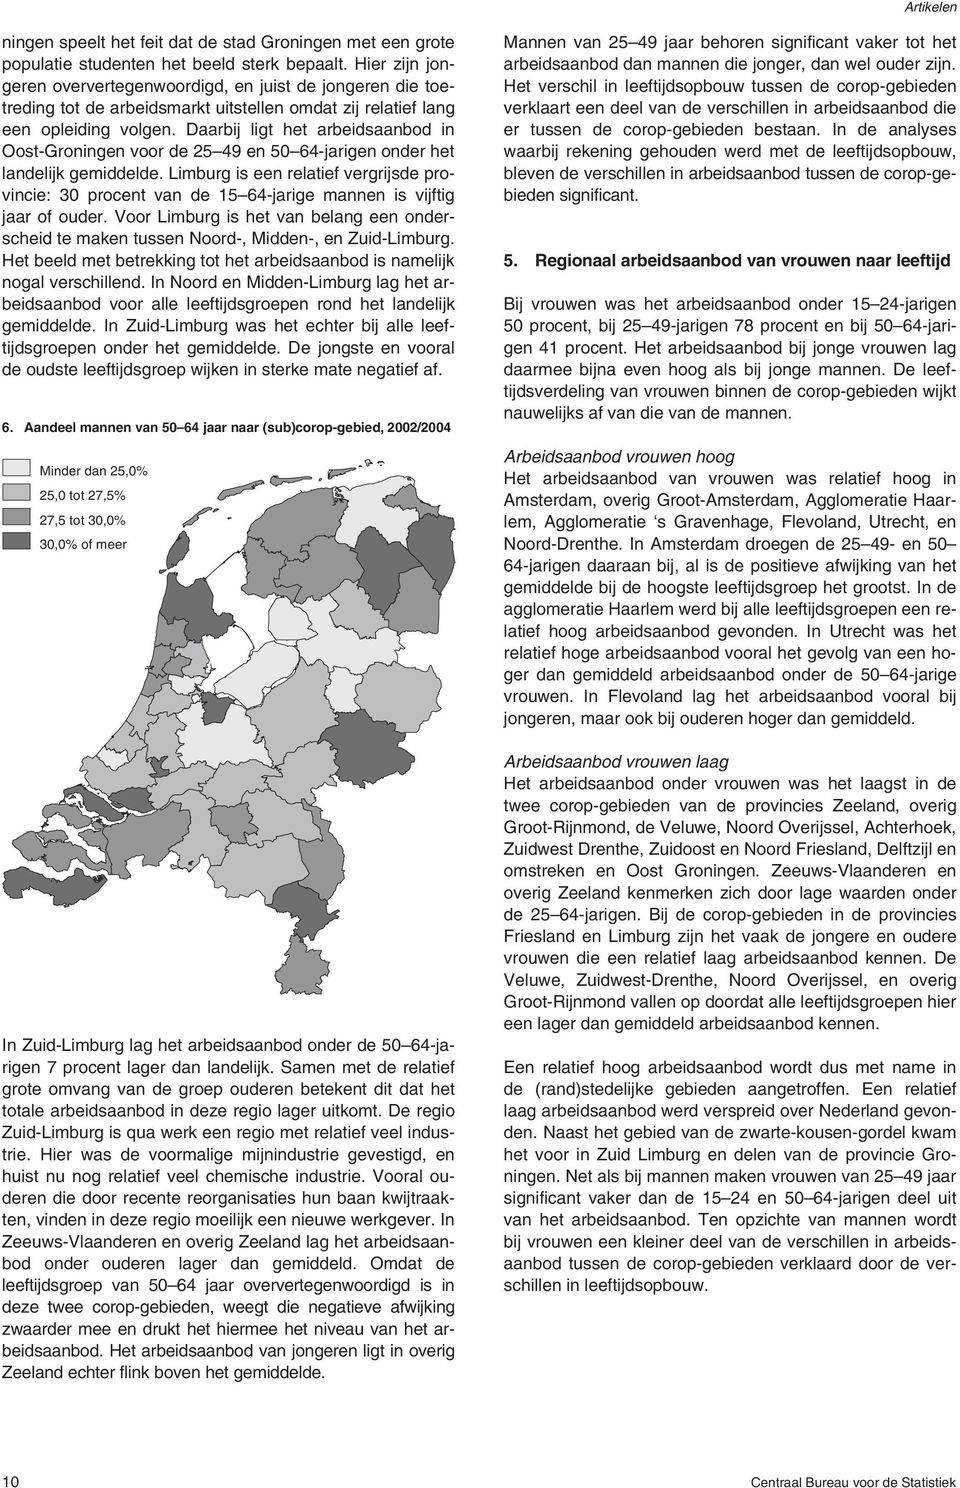 Daarbij ligt het arbeidsaanbod in Oost-Groningen voor de 25 49 en 5 64-jarigen onder het landelijk gemiddelde.